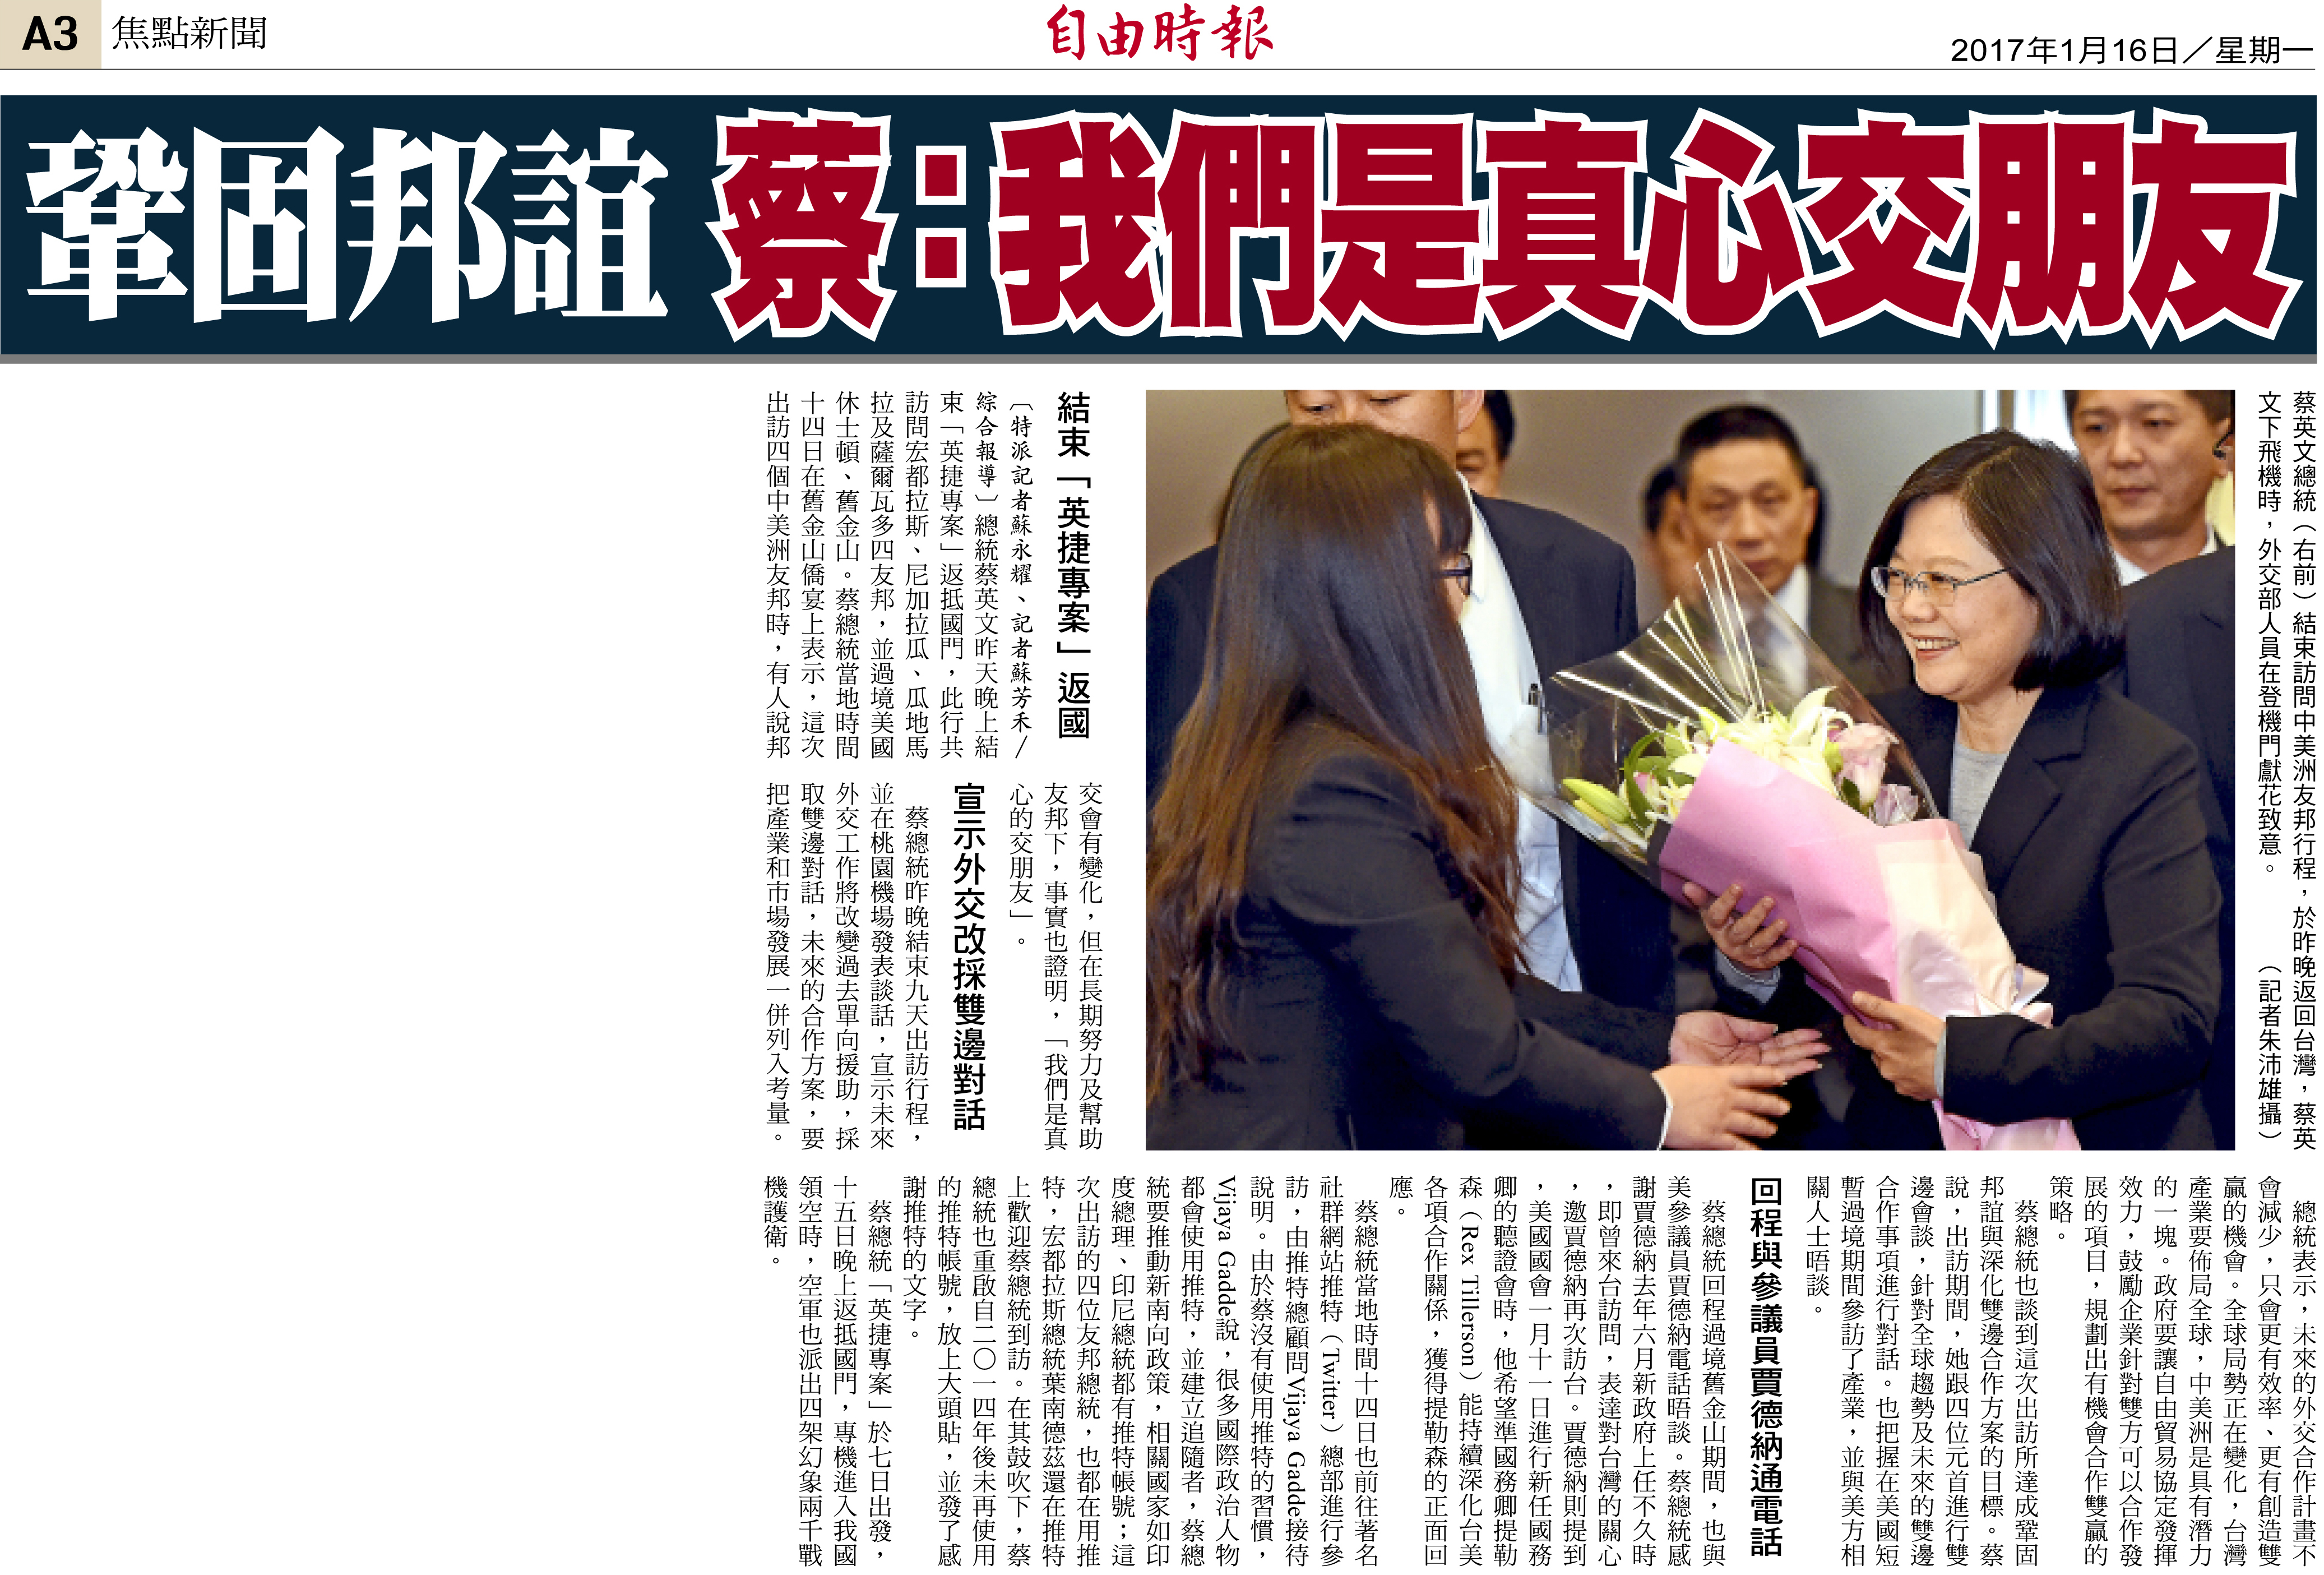 Consolidando los vínculos diplomáticos, la Presidenta Tsai: “hacemos amigos con sinceridad”